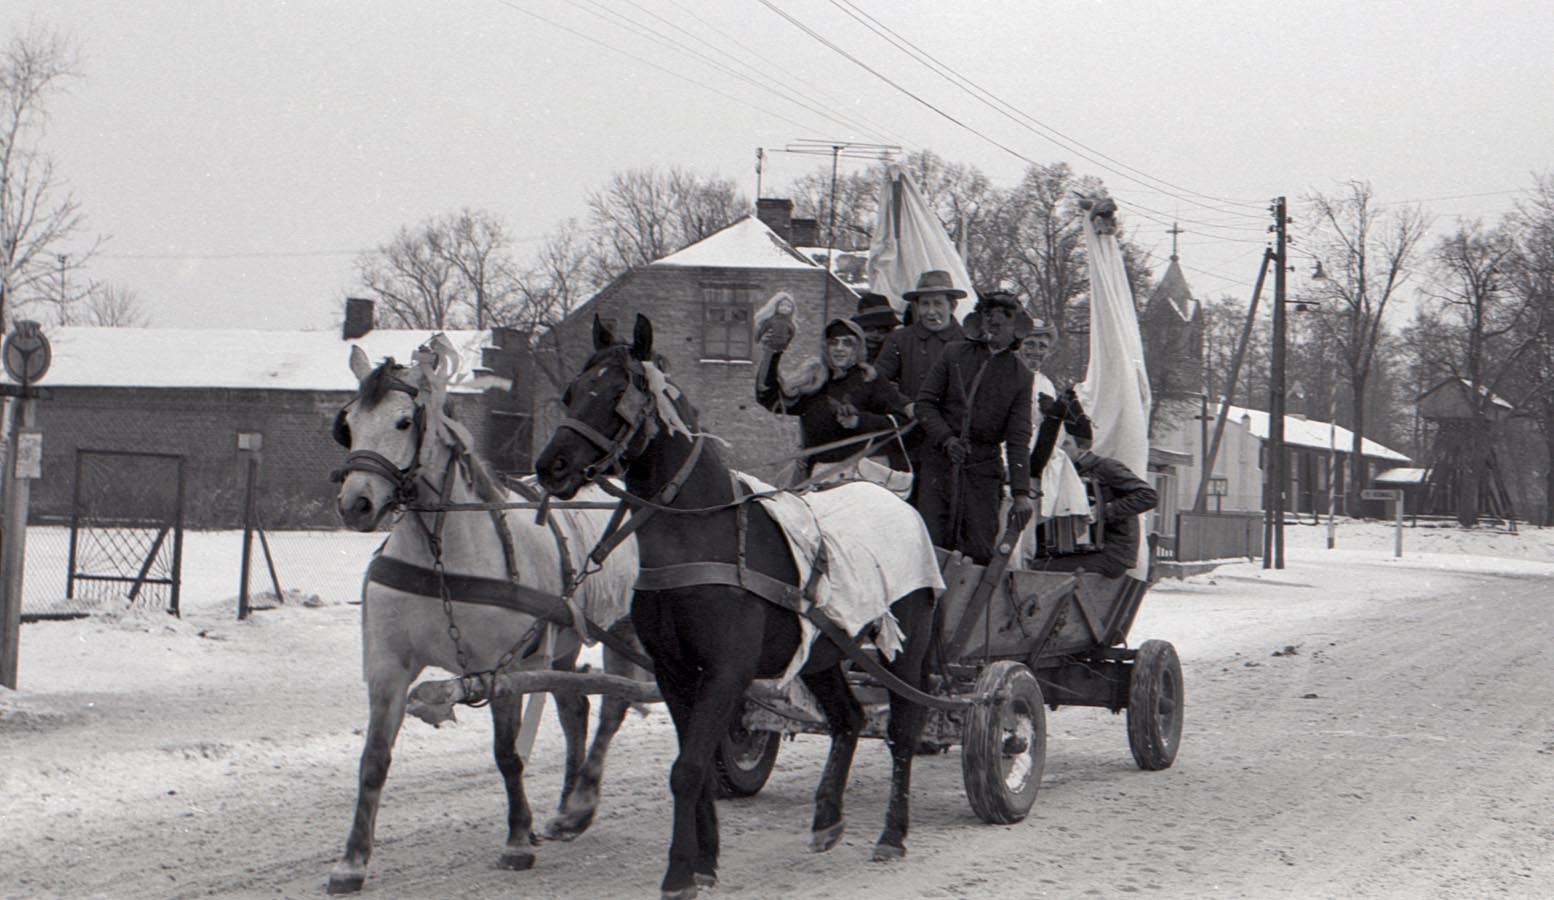 Fotografia czarno-biała. Zima, grupa przebranych osób jedzie drewnianym wozem zaprzęgniętym w dwa konie, najprawdopodobniej siwka i karego. W tle widać zabudowania mieszkalne, lampy uliczne i wieżę kościoła.